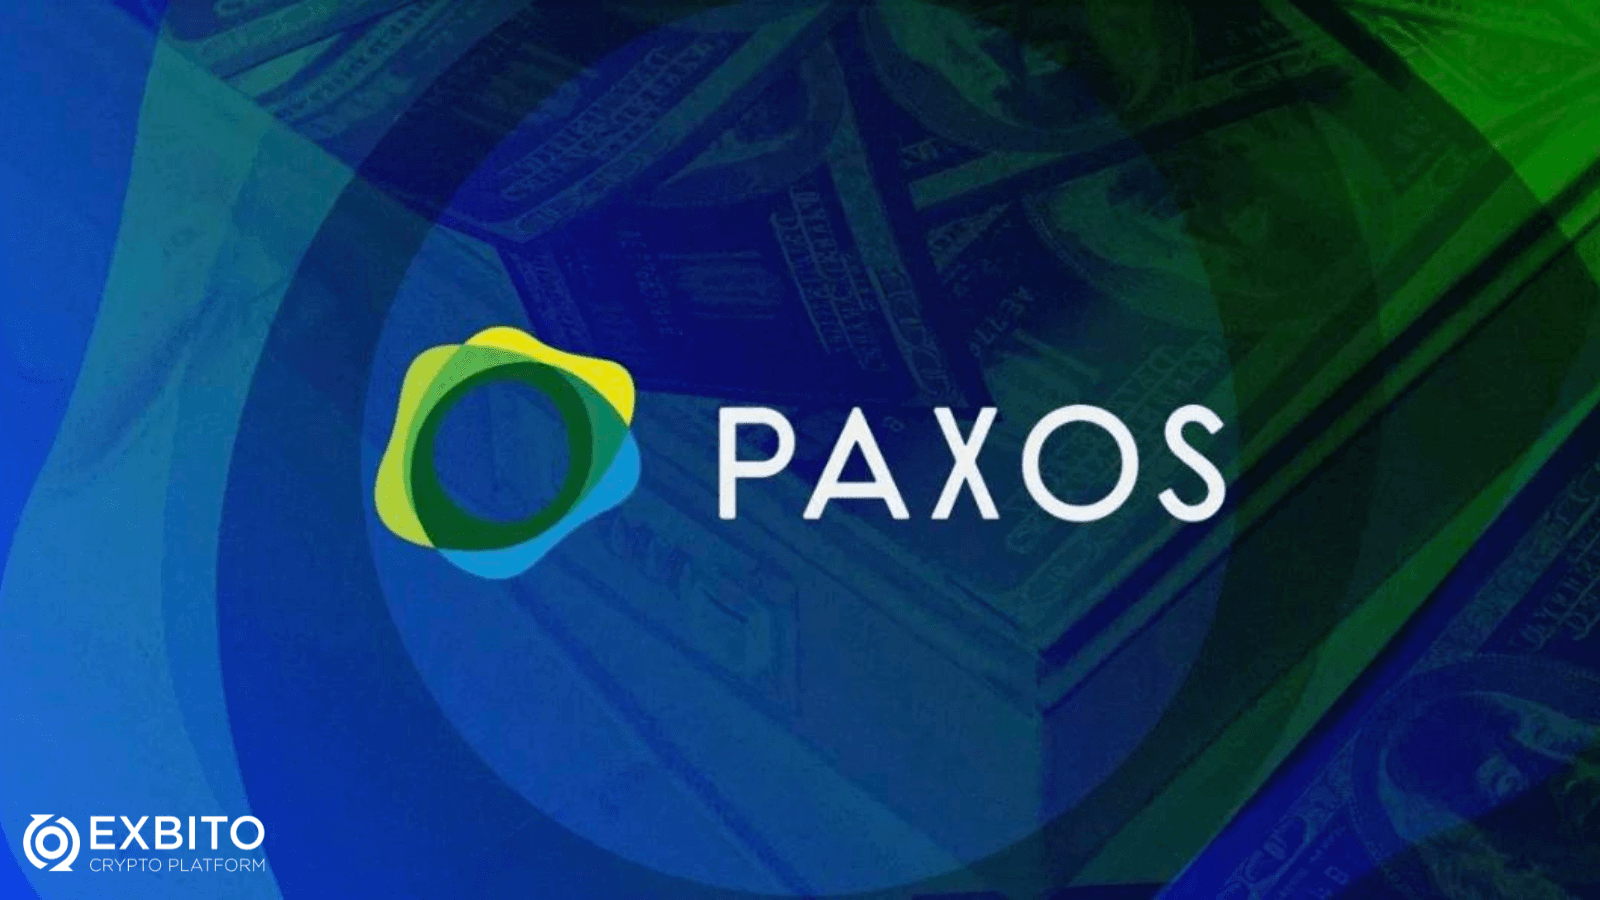 شرکت پکسوس تراست (Paxos Trust Company)